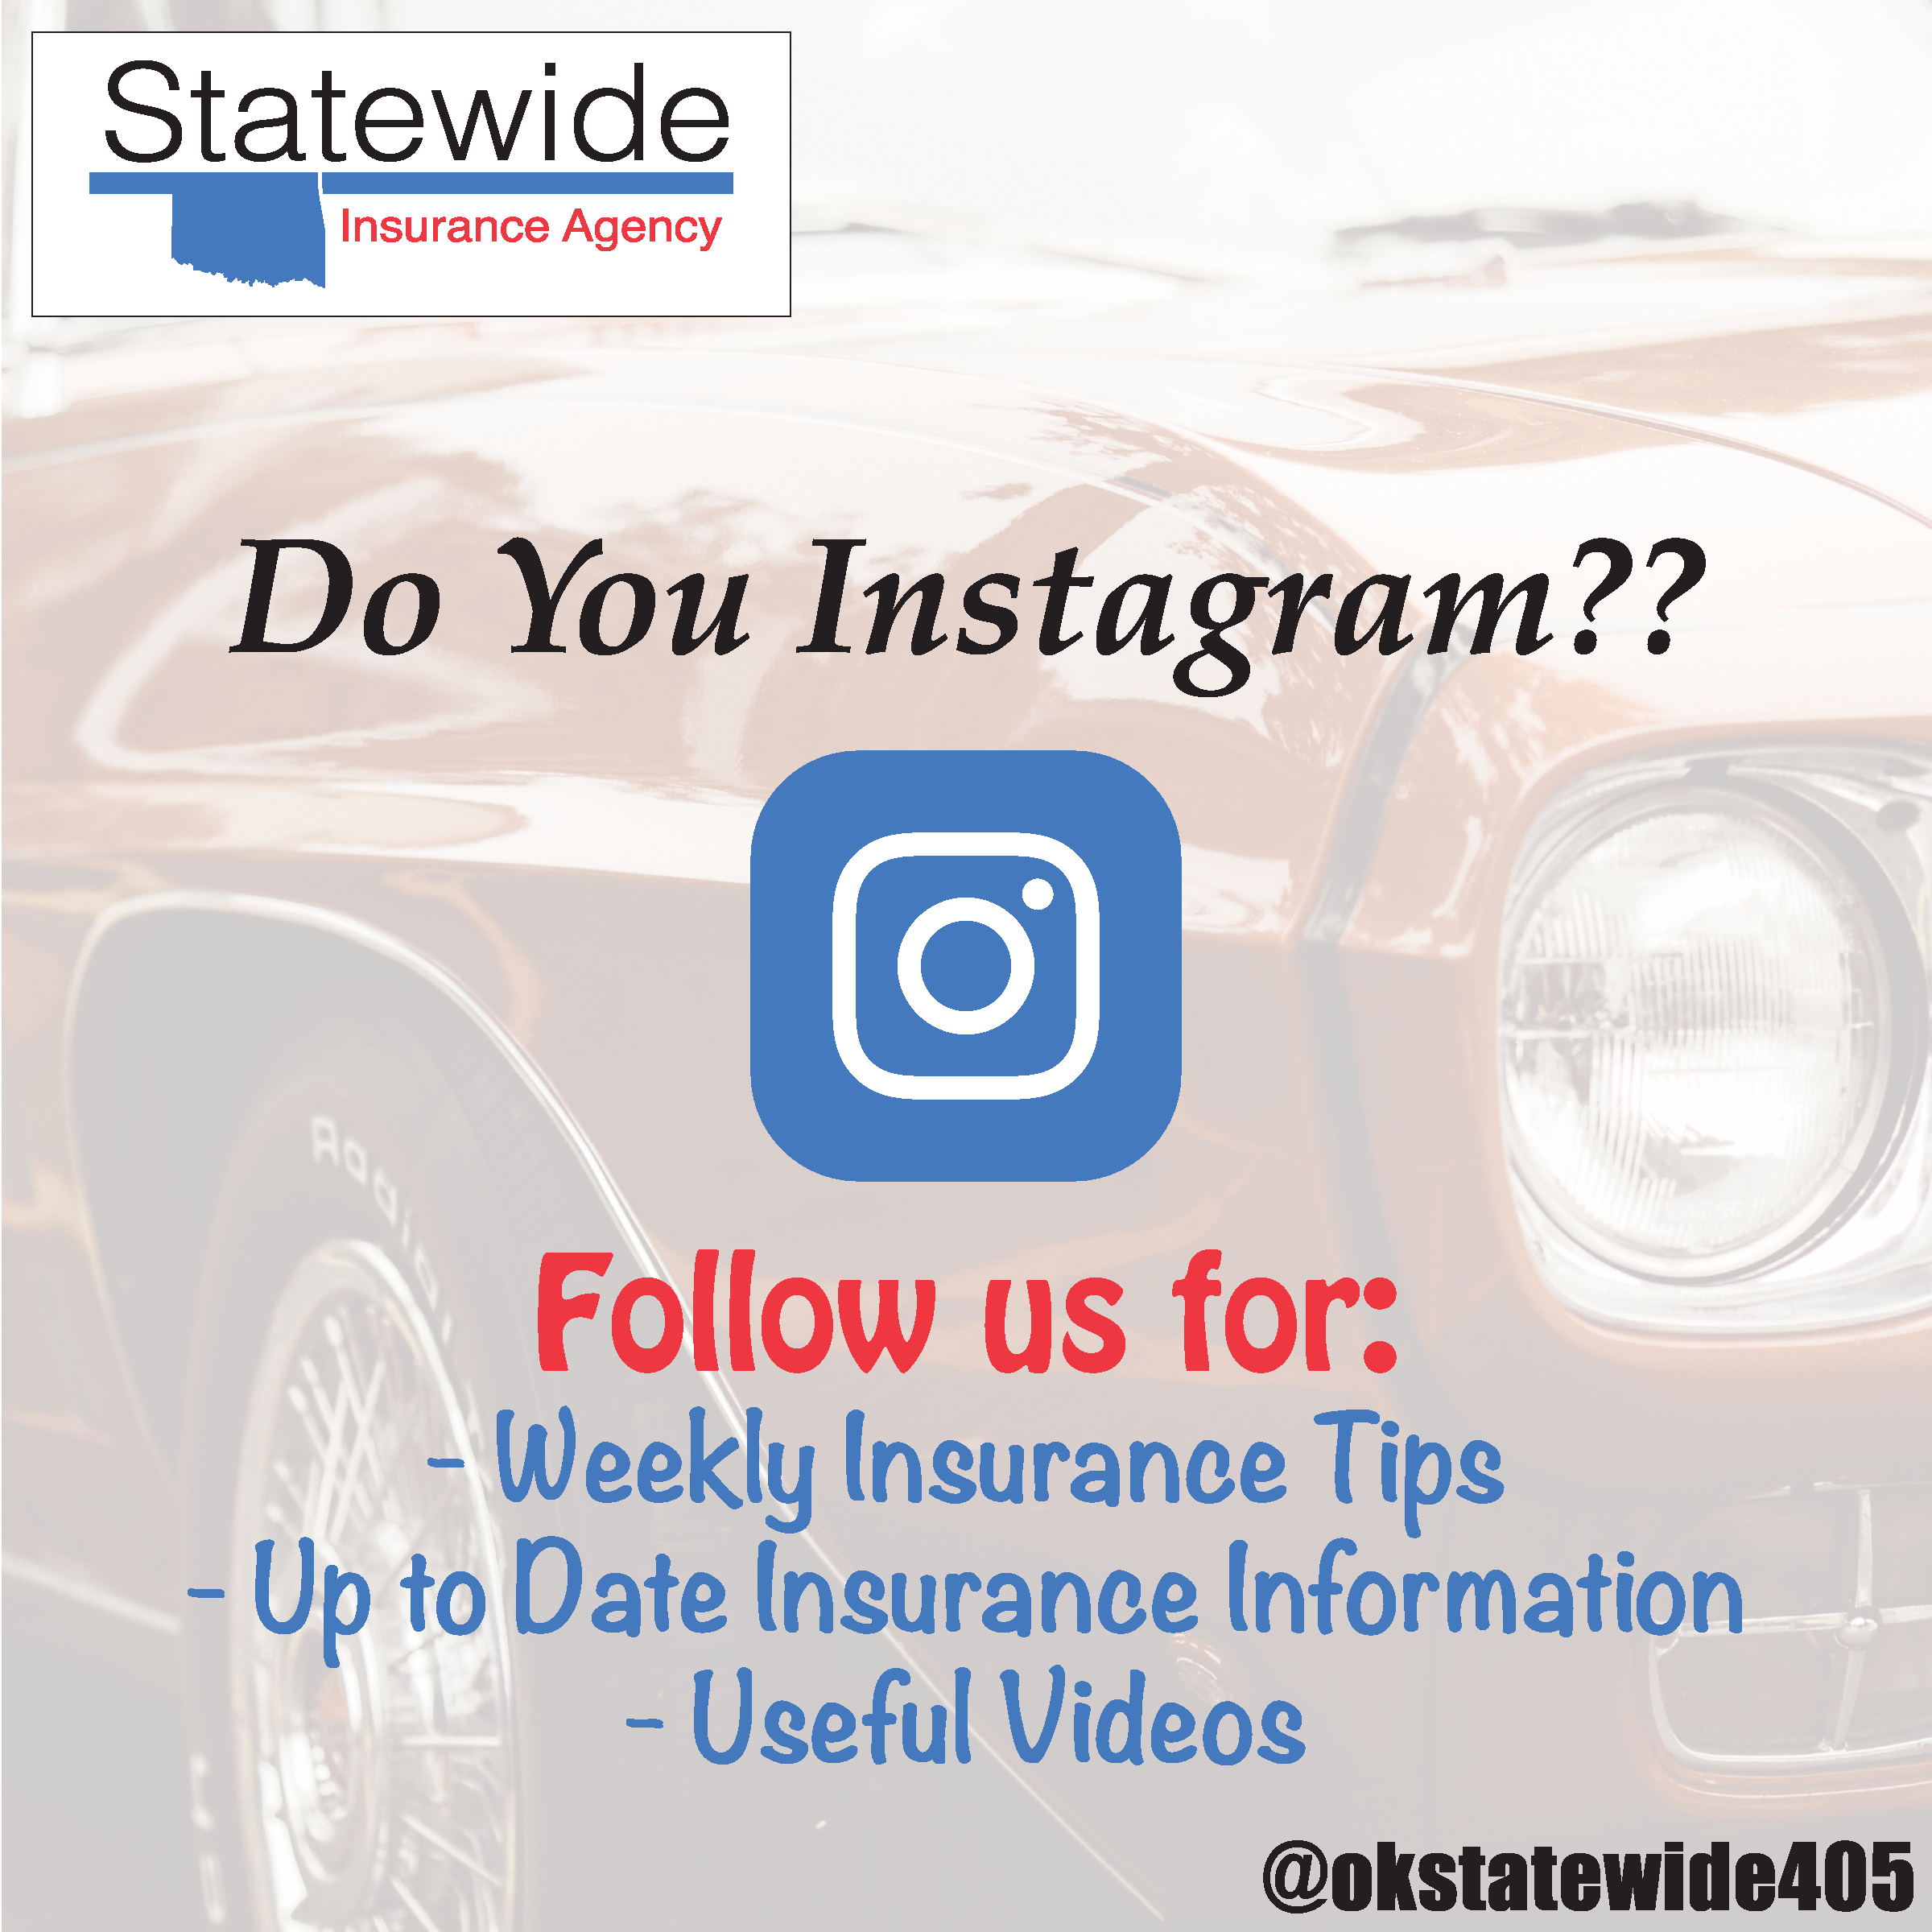 do-you-instagram-okstatewide405